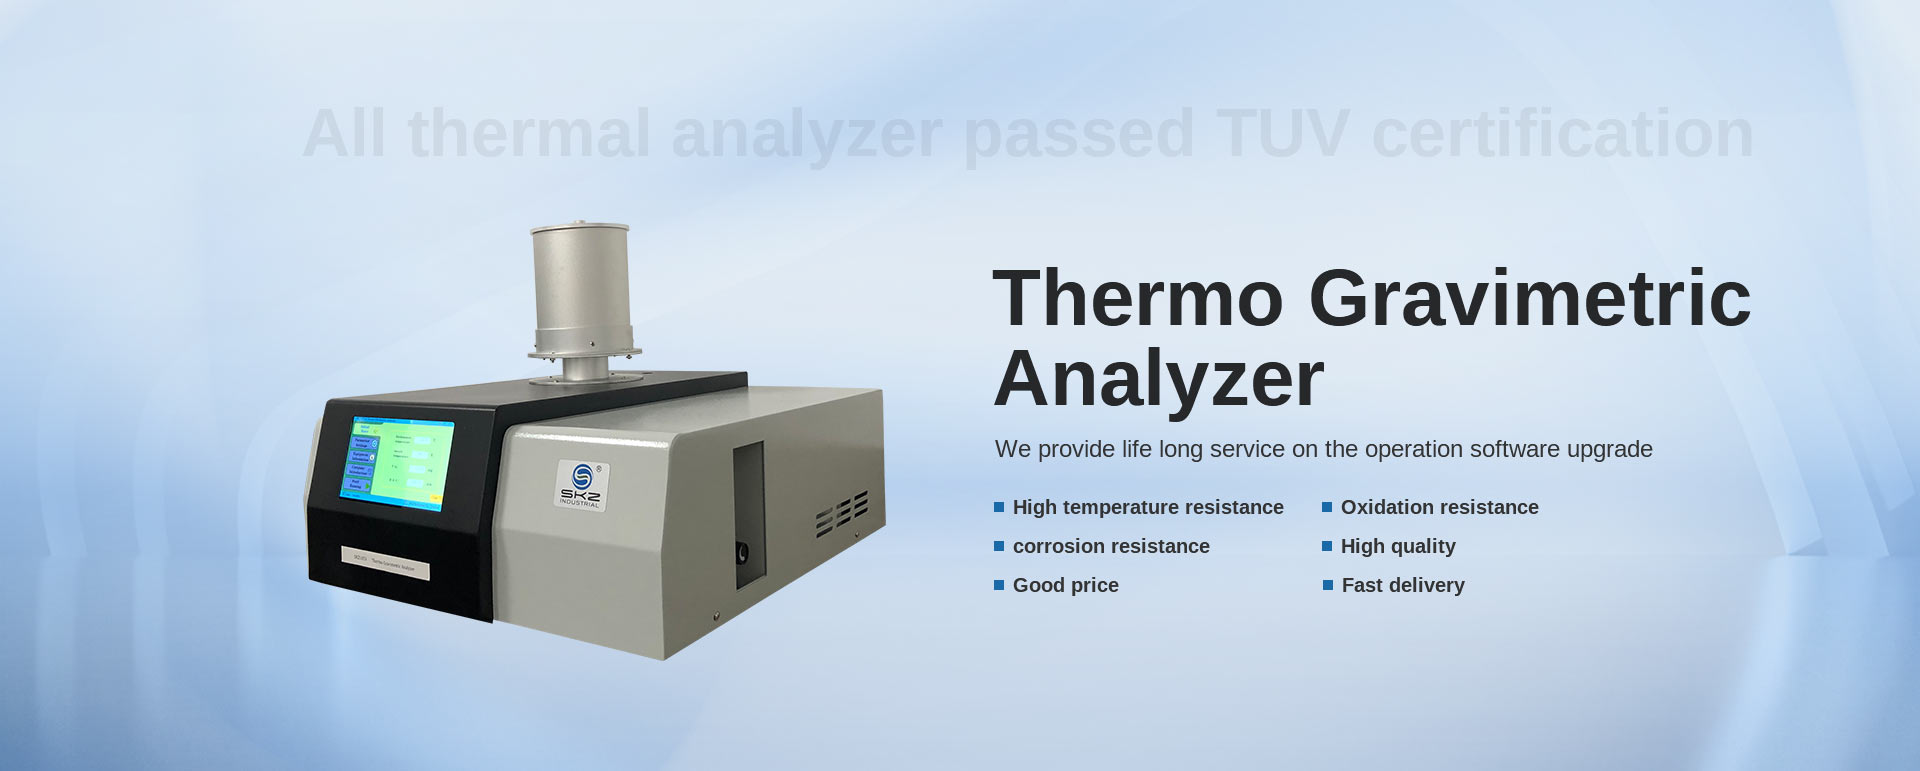 Analizator termograwimetryczny